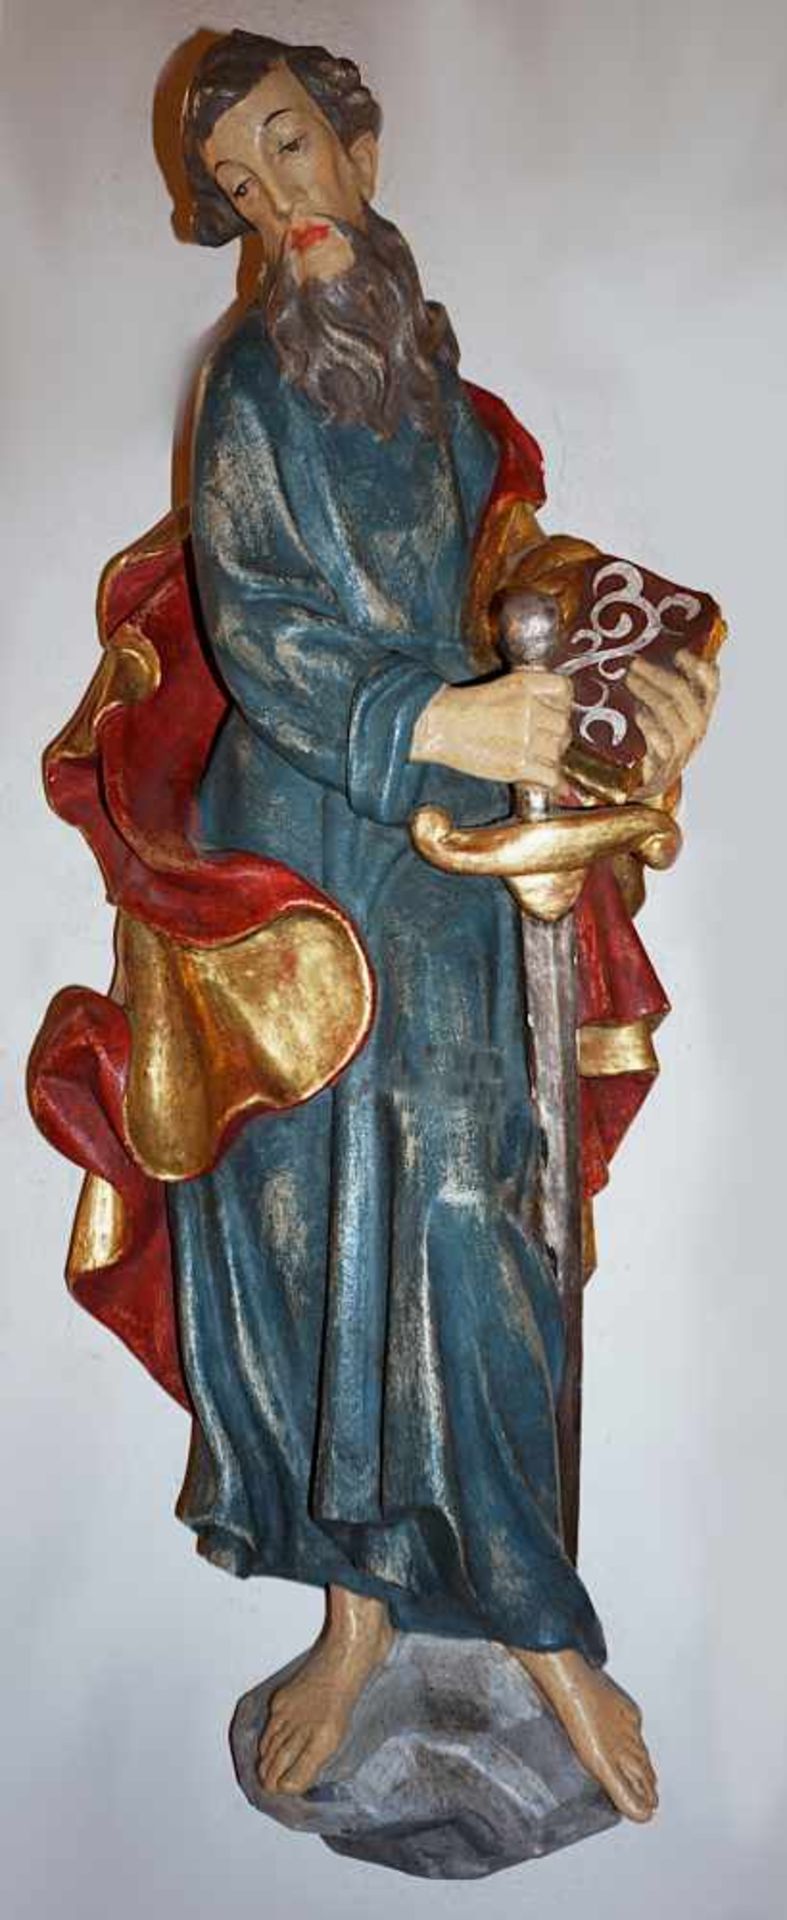 2 Holzfiguren/Wandappliken 20. Jh. "Hl. Petrus", "Hl. Paulus" - Bild 2 aus 2